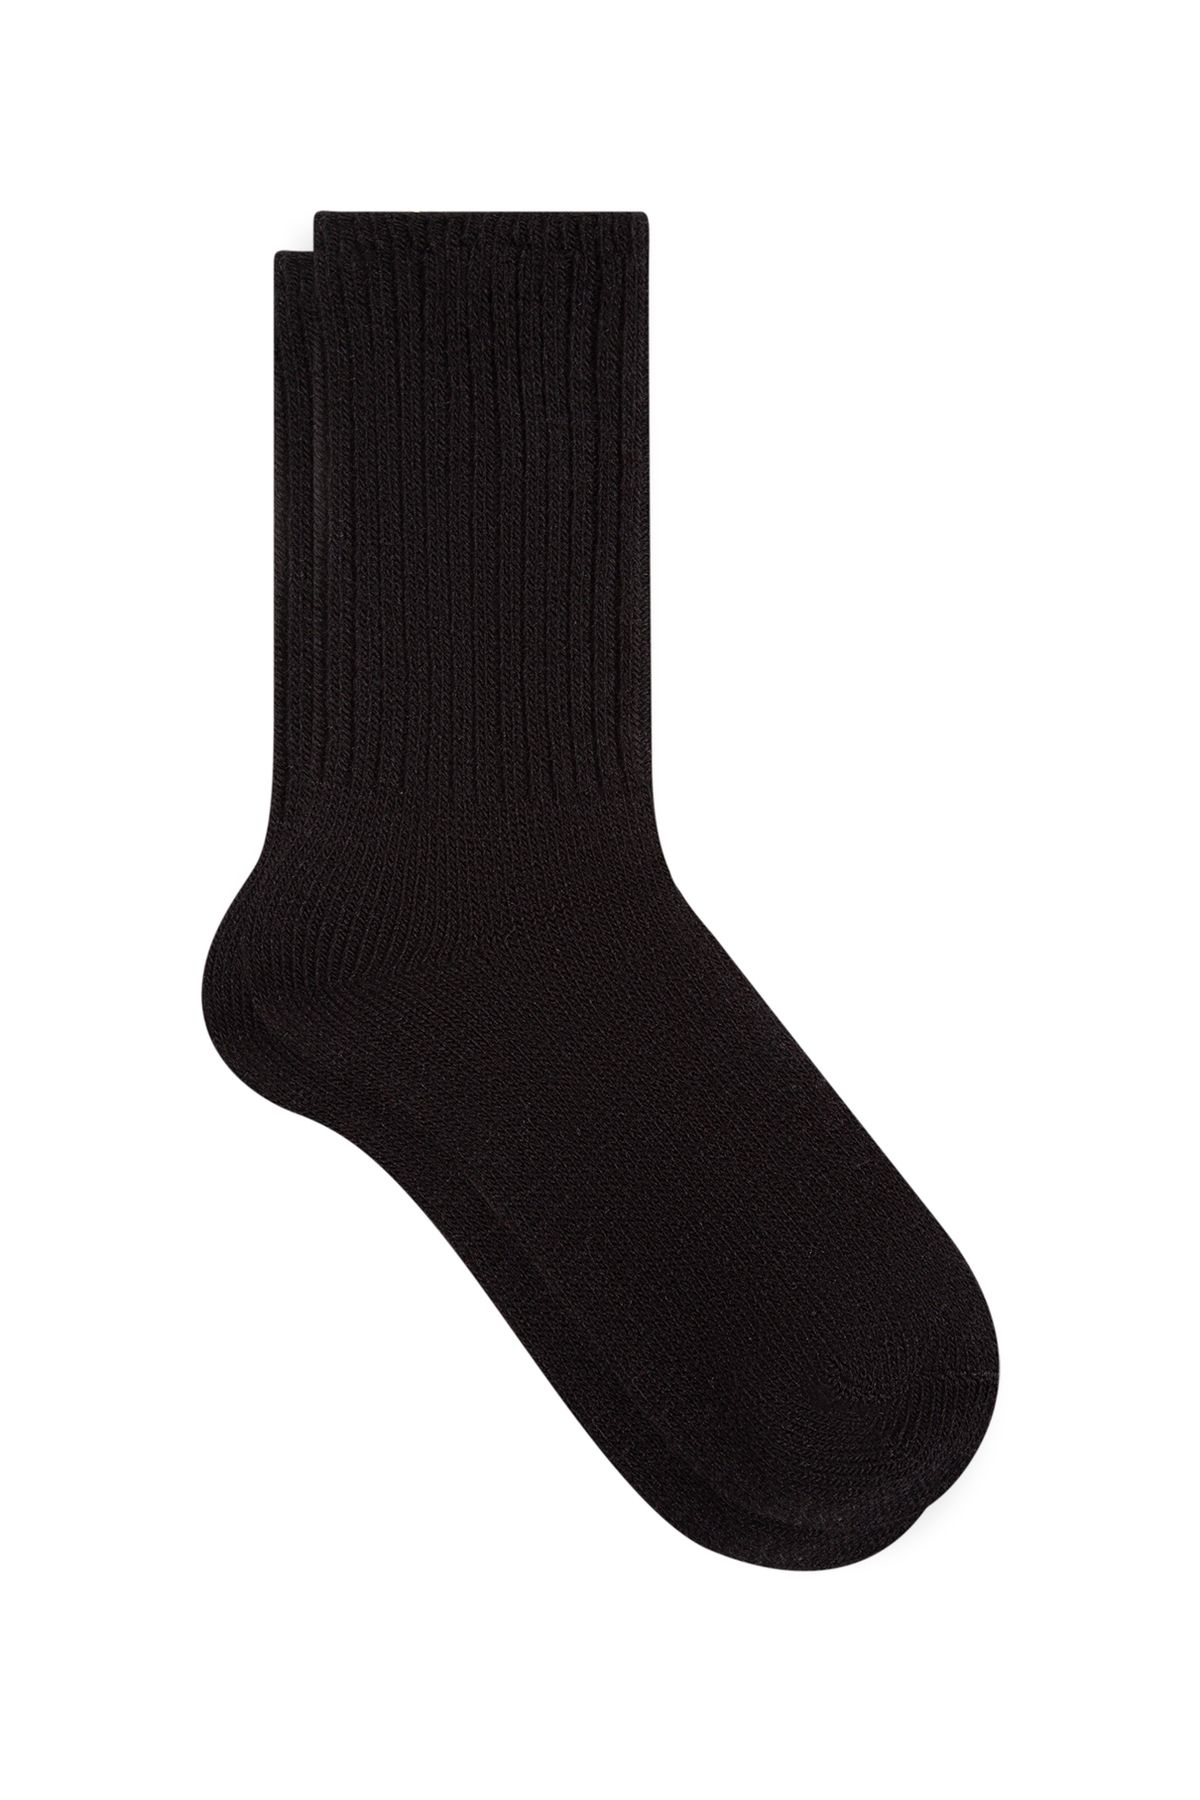 Mavi Siyah Bot Çorabı 1910926-900